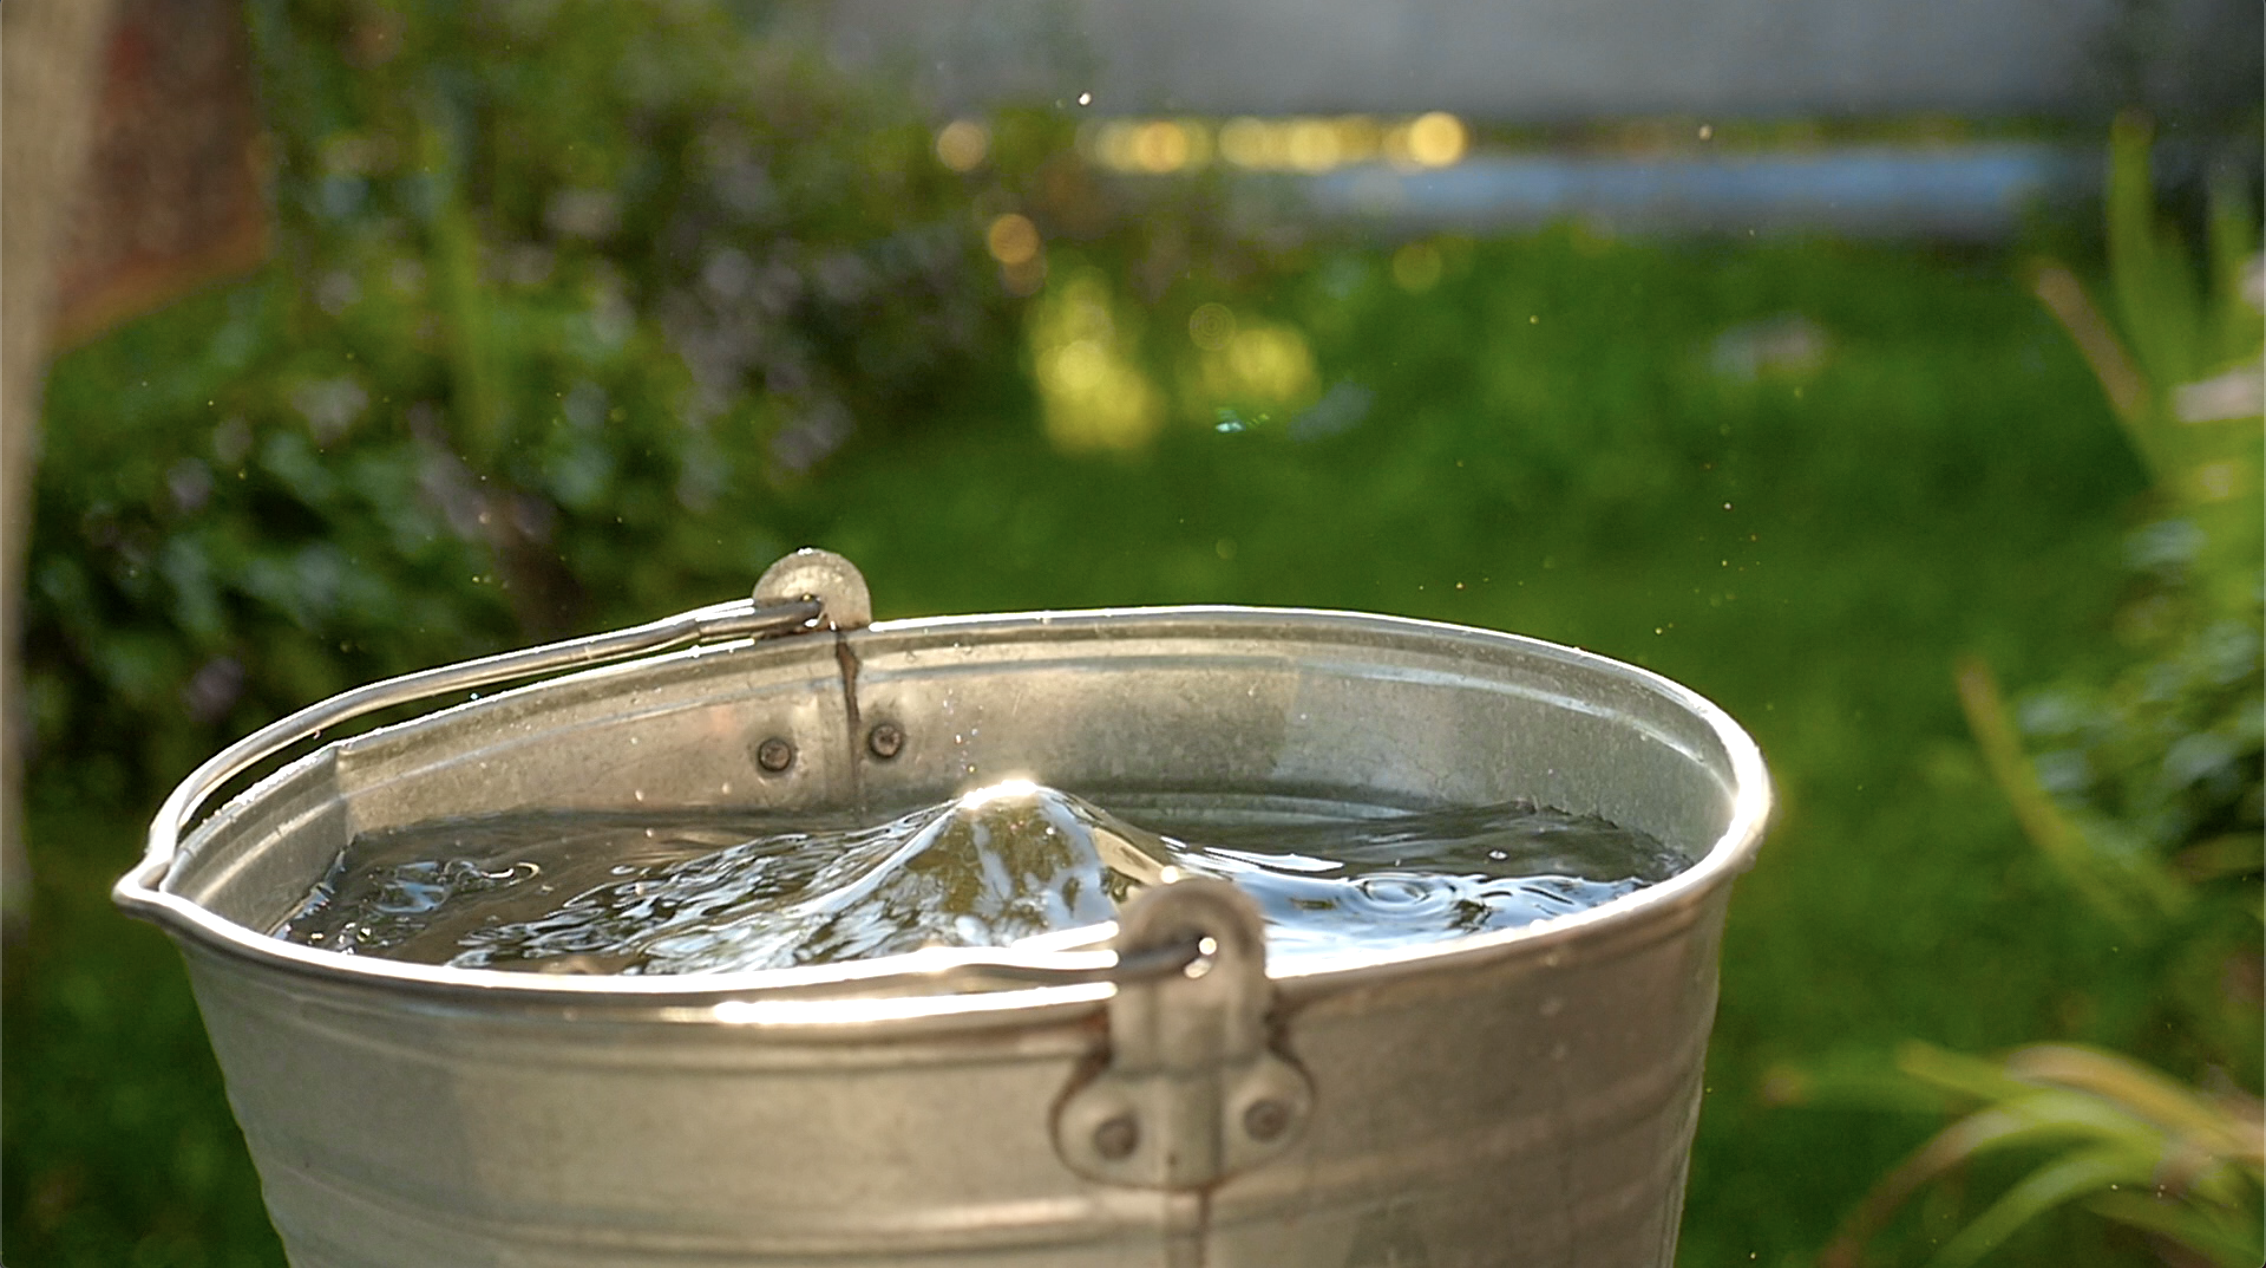 Water in a bucket